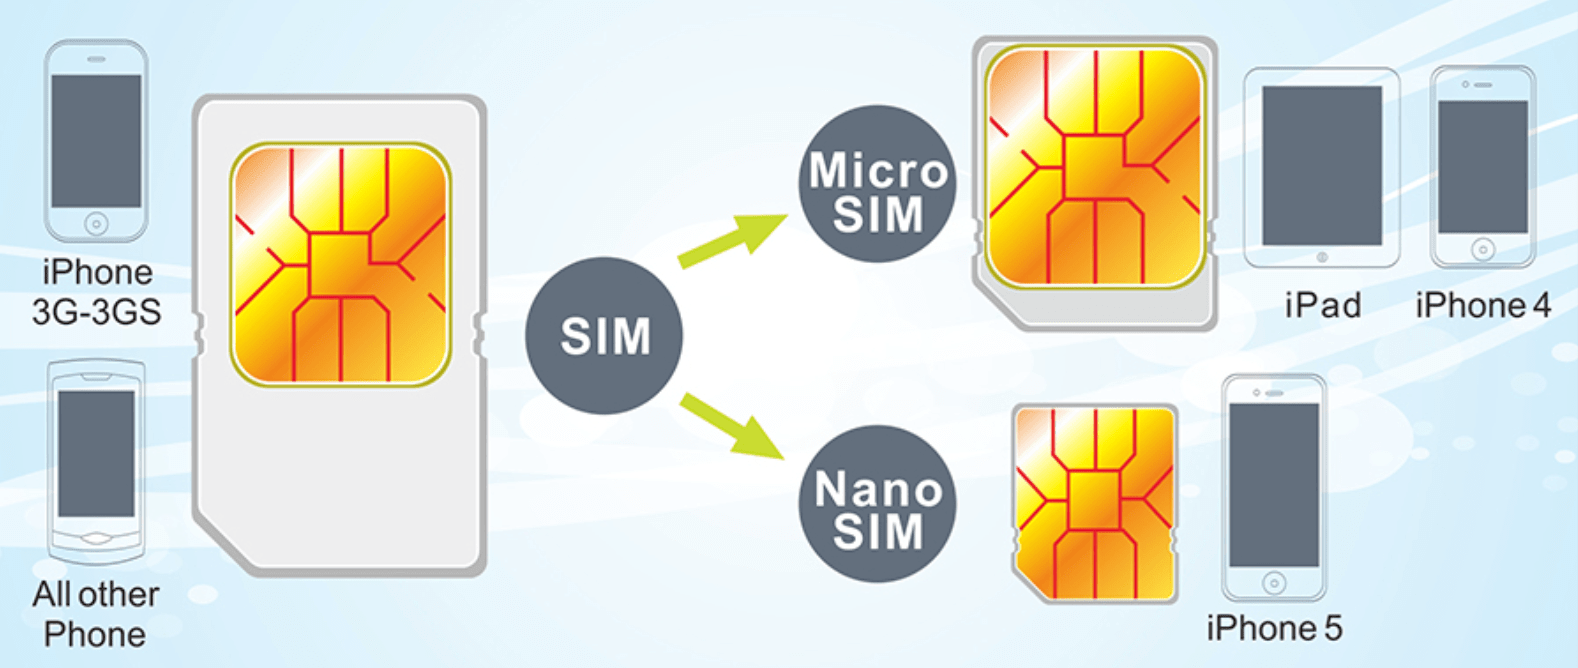 Приостановили сим карту. Мини сим микро сим нано сим. Mini SIM Micro SIM отличия. SIM Mini Micro Nano. Micro-SIM И Nano-SIM карты отличия.